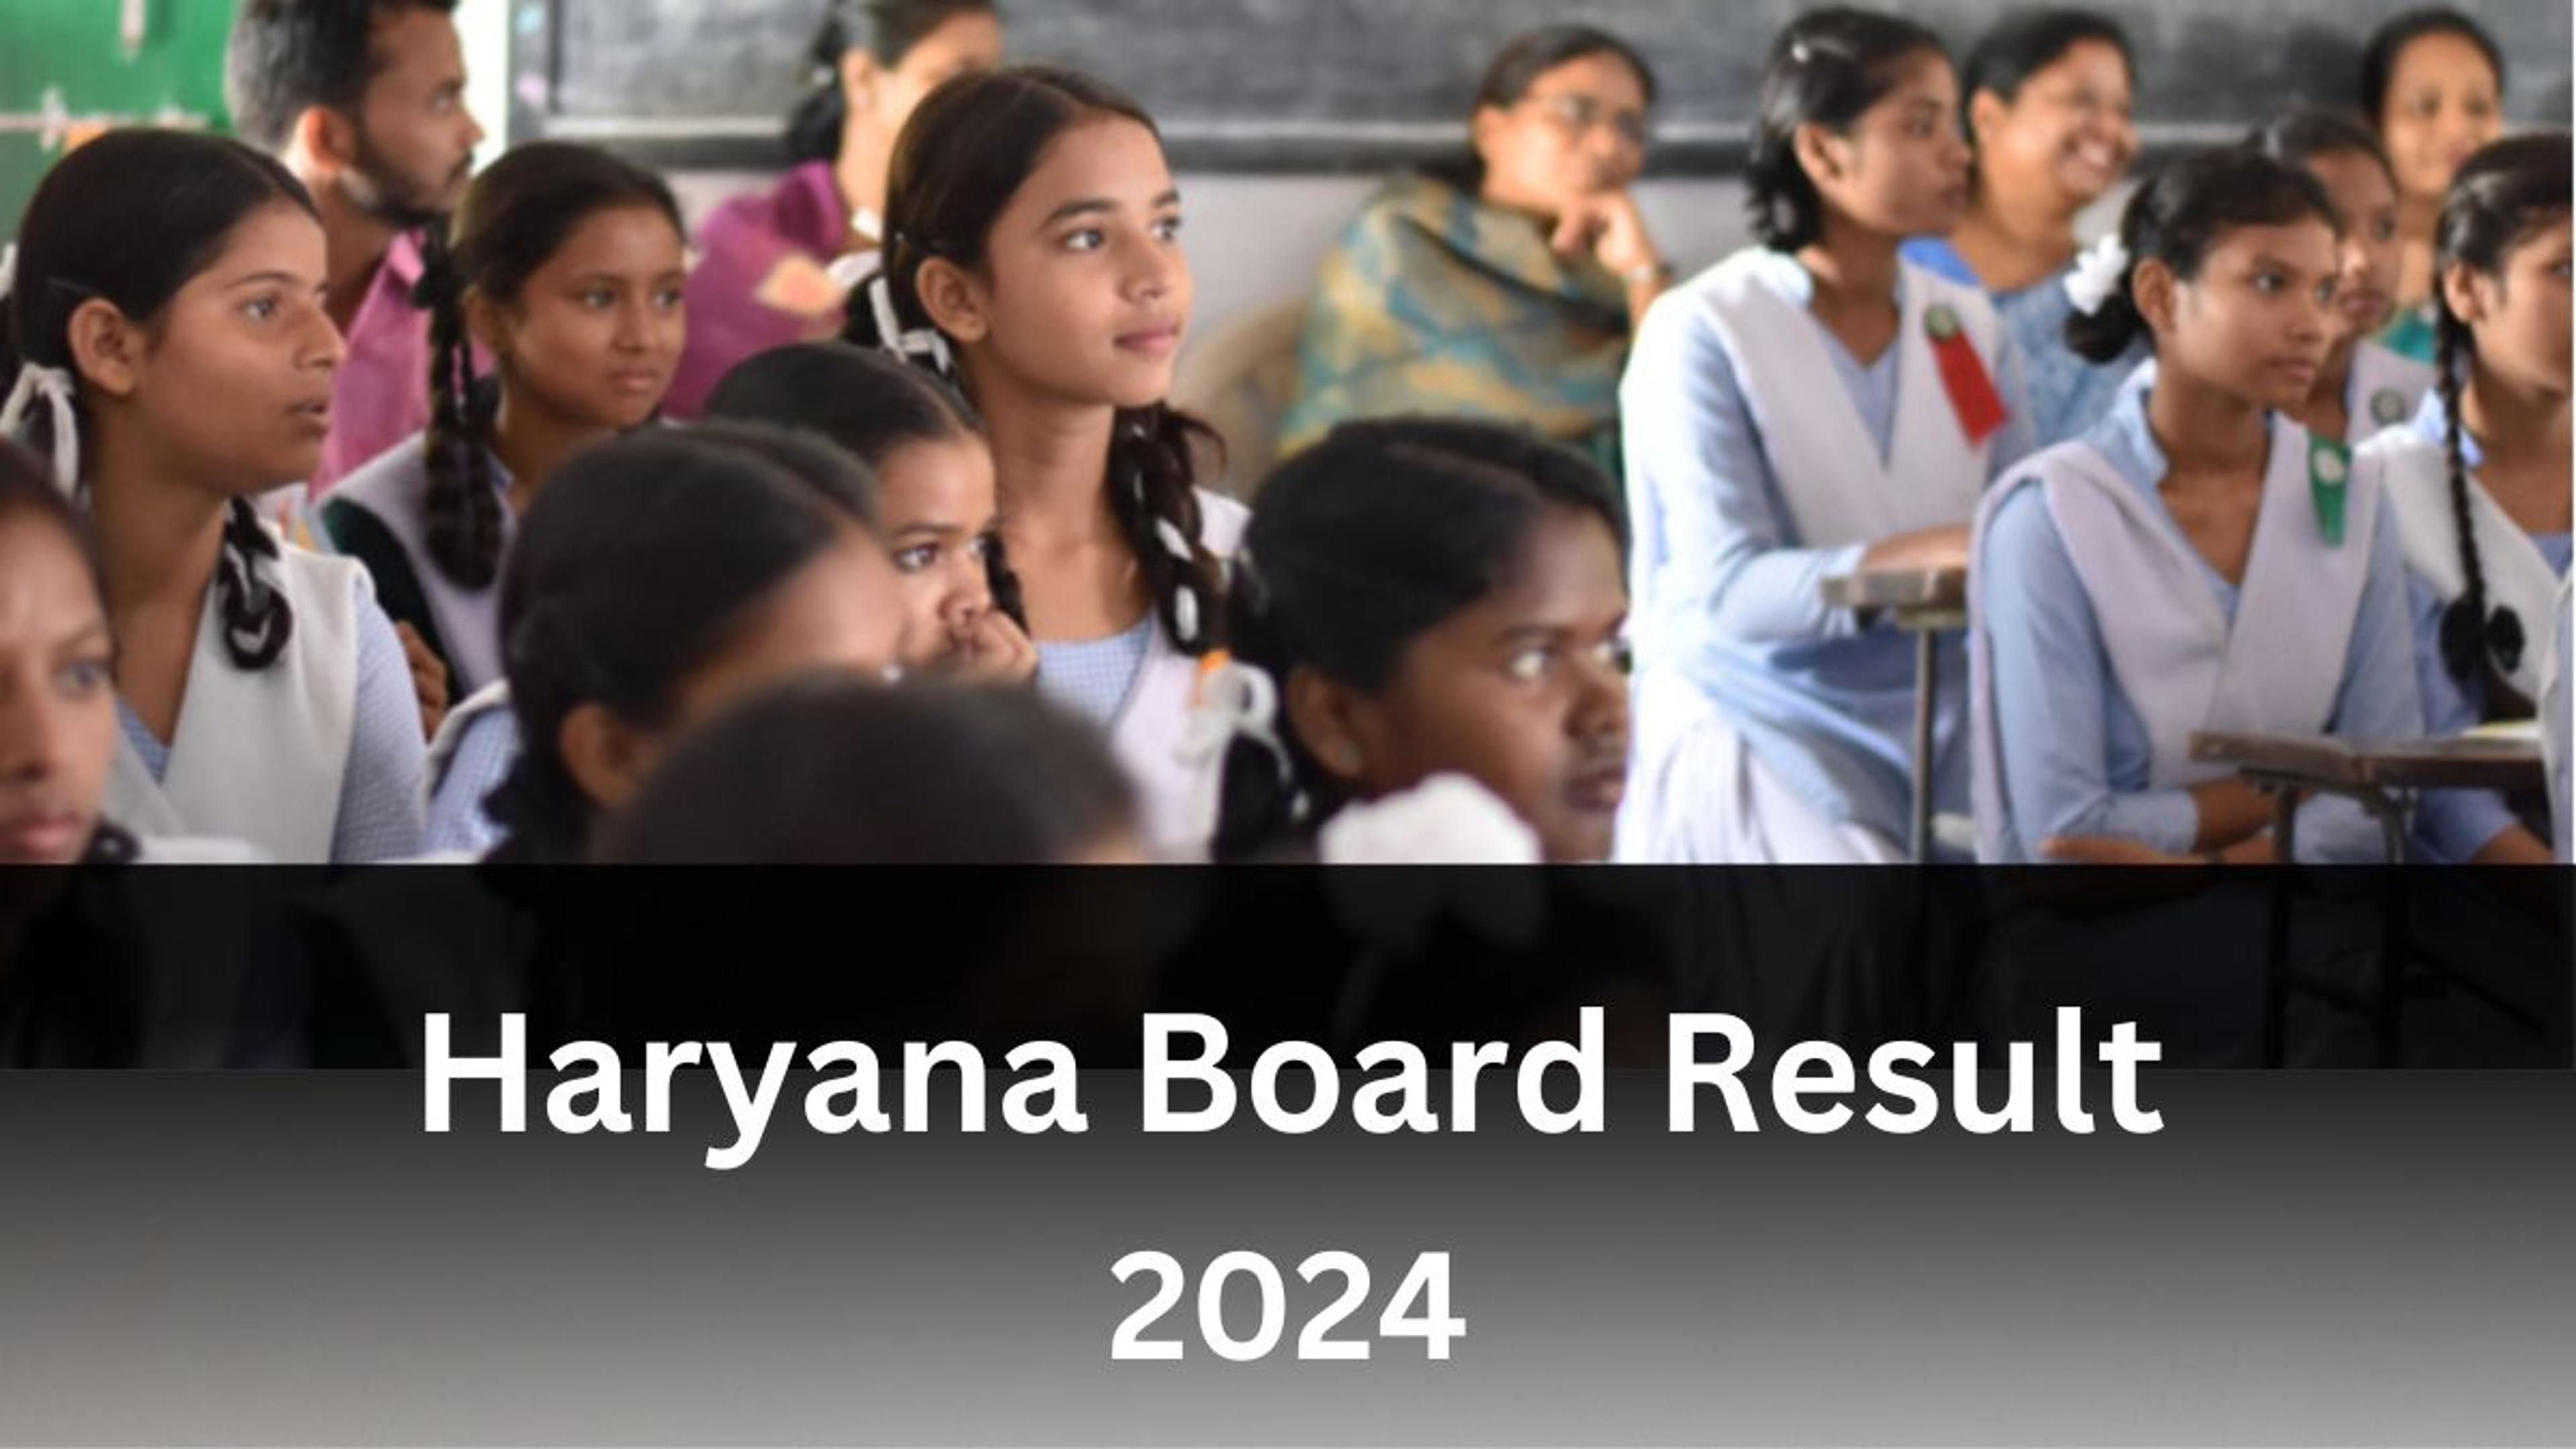 Haryana Board Result 2024: जारी हुआ हरियाणा 12वीं बोर्ड का रिजल्ट, लड़कियों ने
मारी बाजी